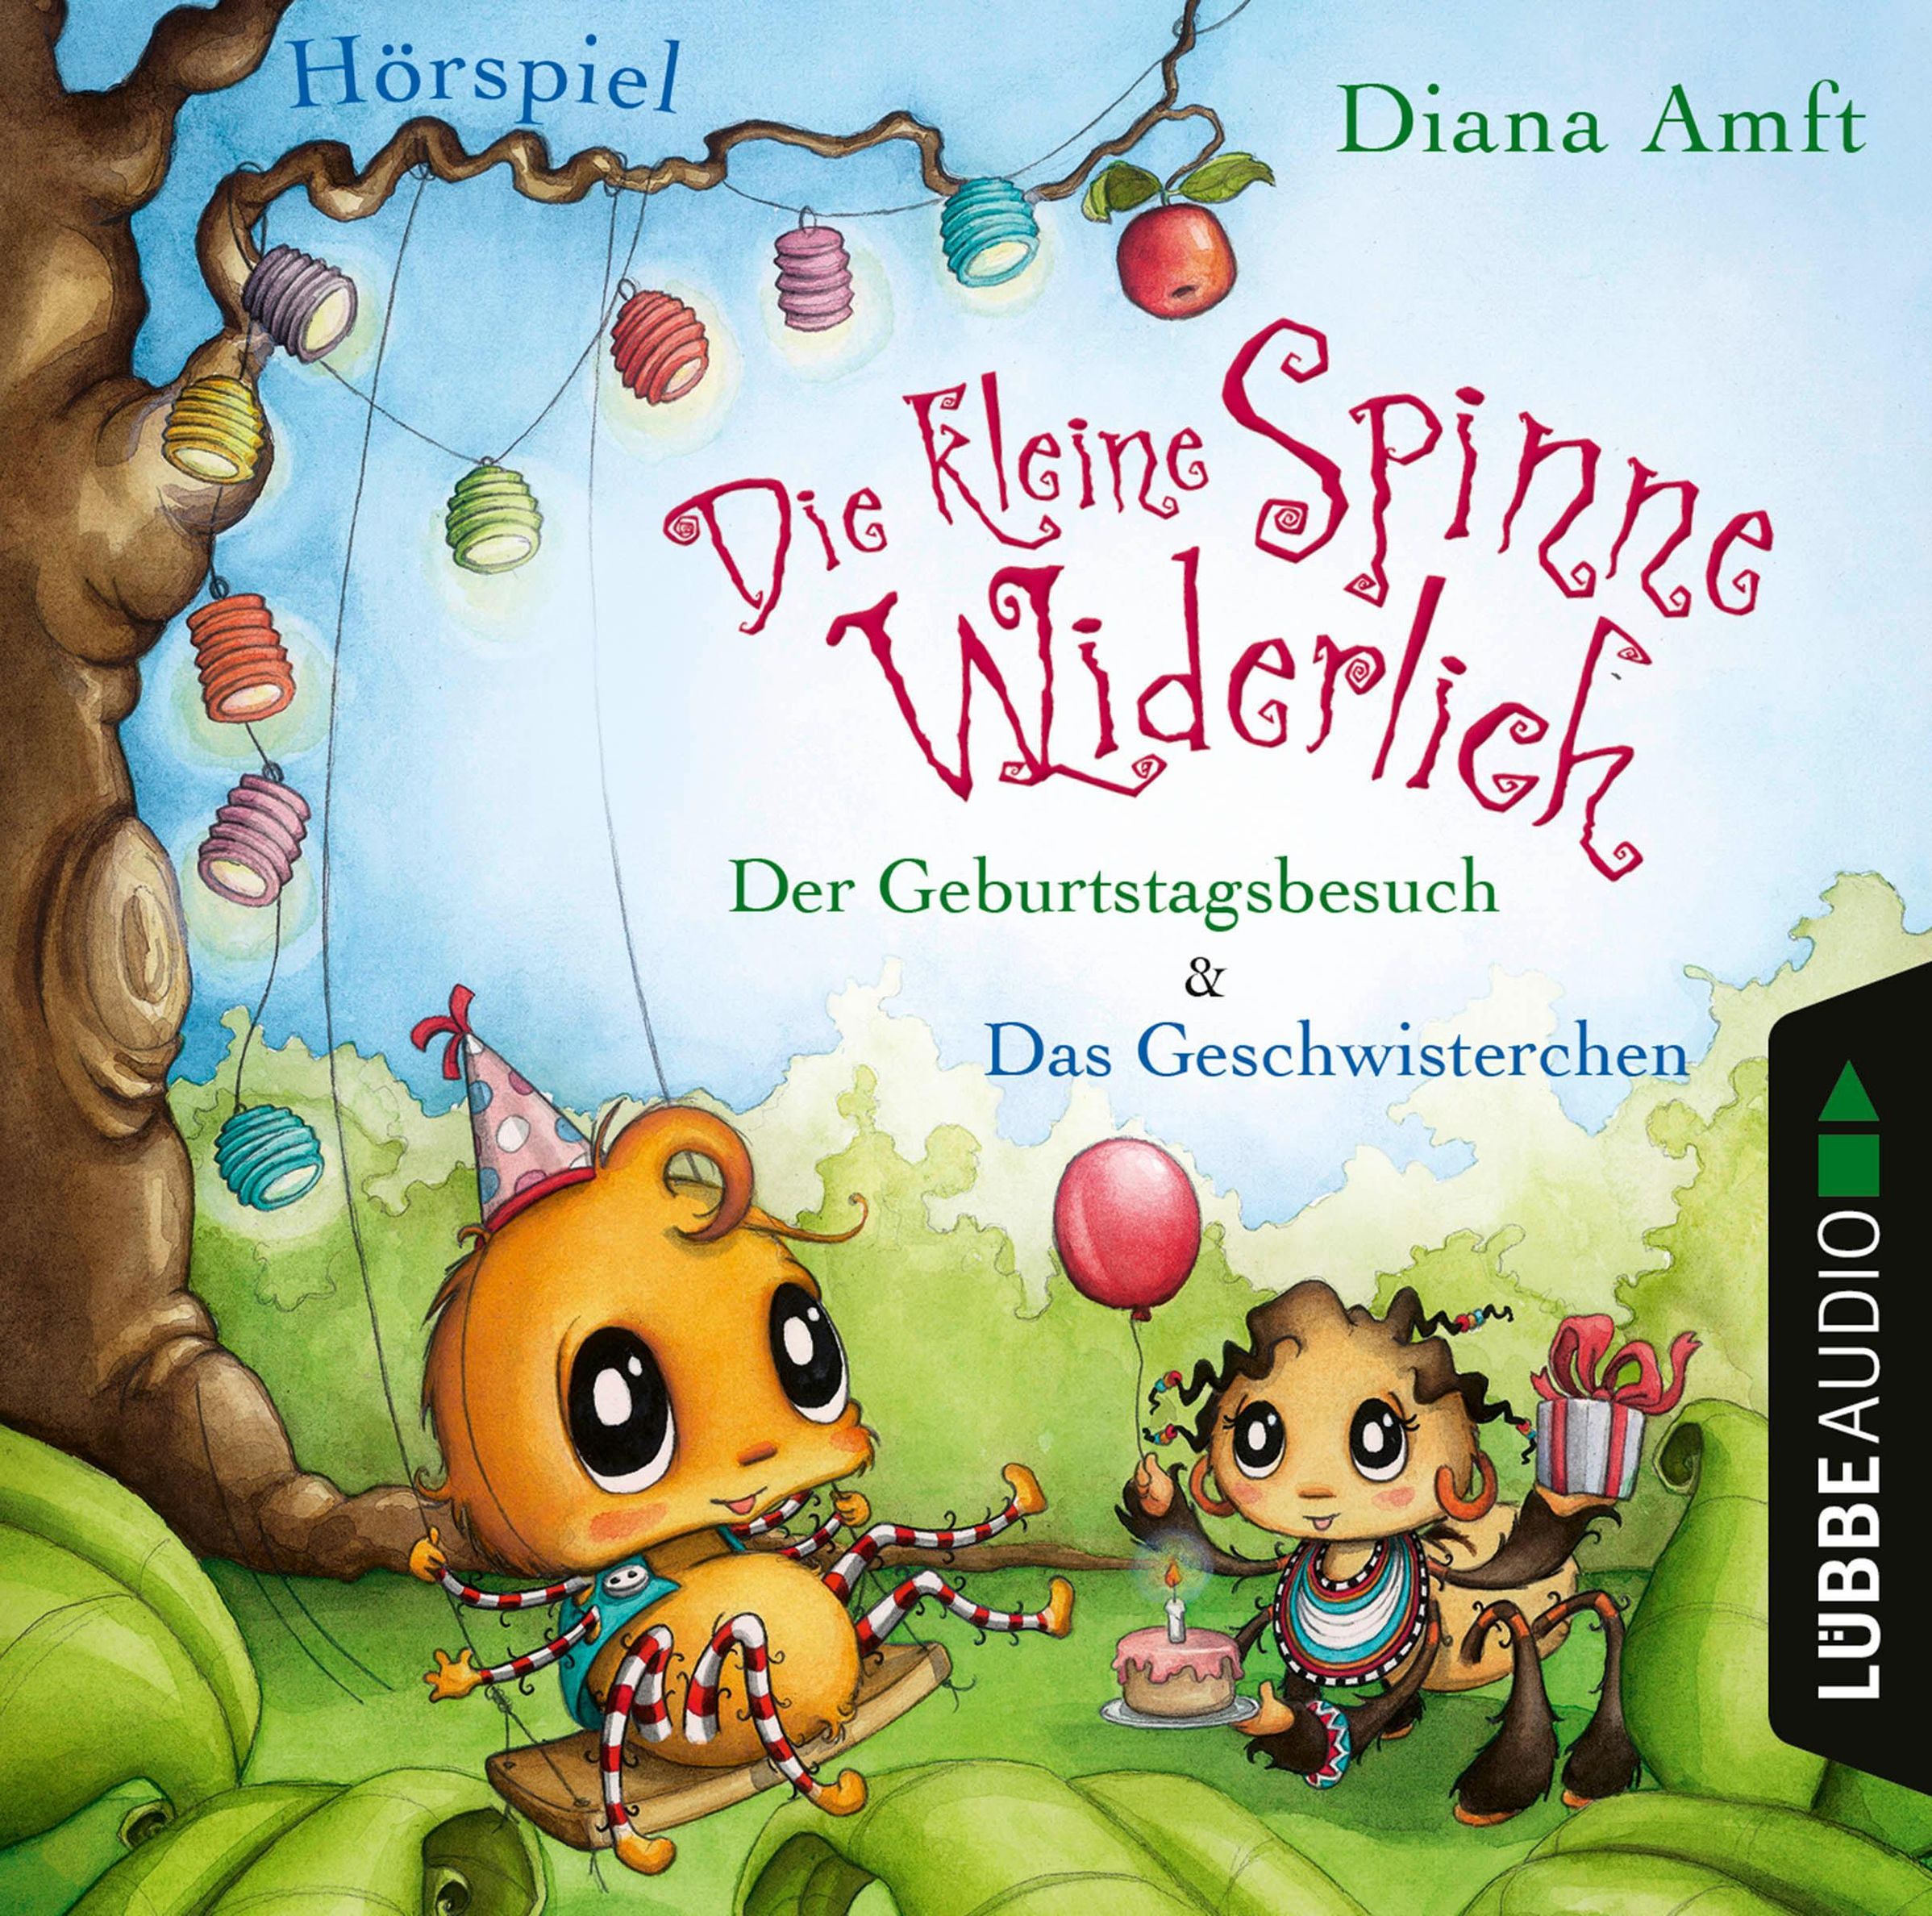 Die kleine Spinne Widerlich - 2 Geschichten - Der Geburtstagsbesuch & Das  Geschwisterchen, 1 Audio-CD Hörbuch